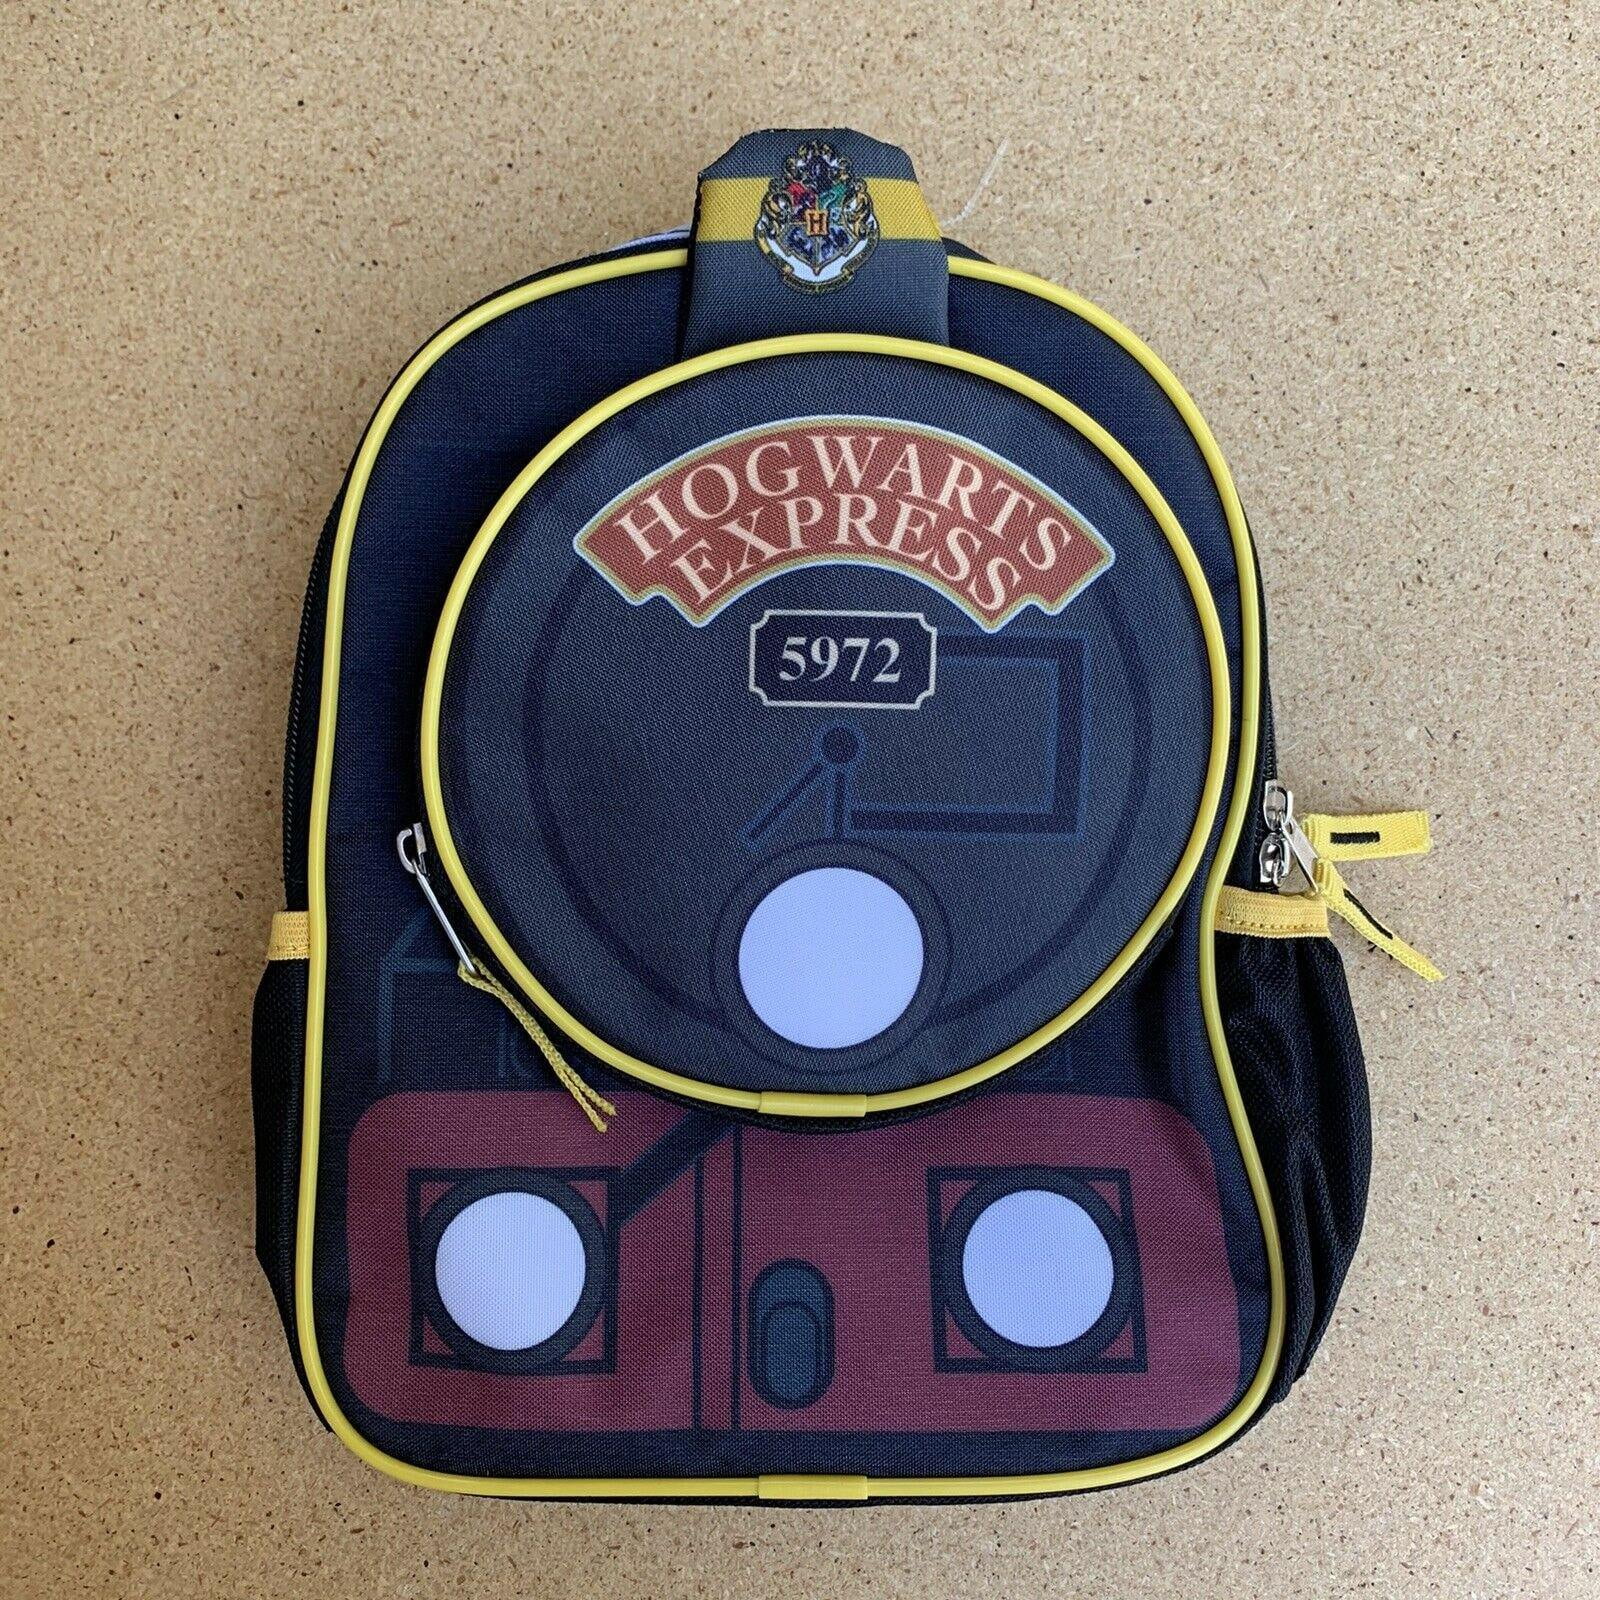 Harry Potter Hogwarts Express Premium Black Backpack 